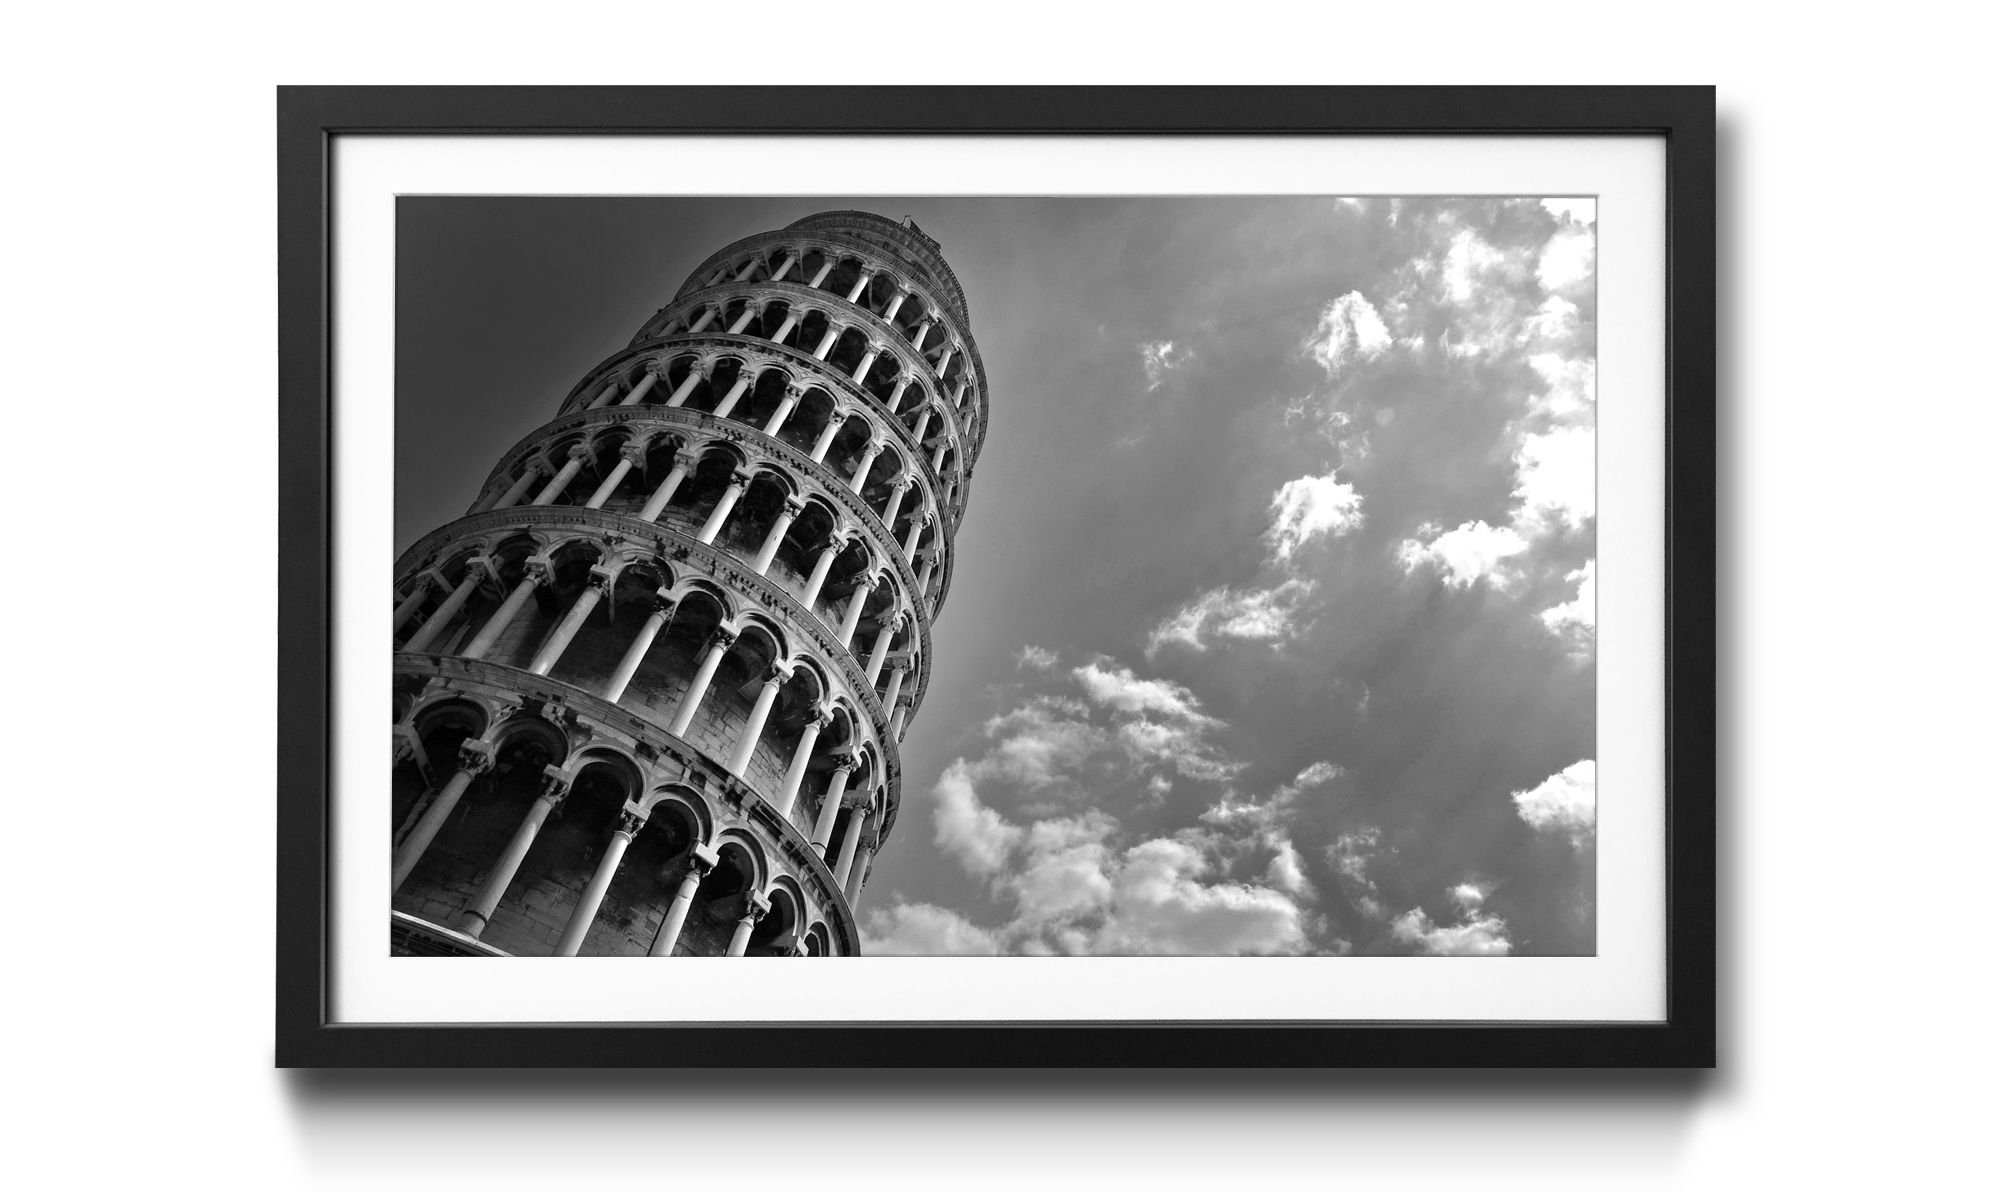 WandbilderXXL Kunstdruck Leaning Tower, Architektur, 4 erhältlich in Größen Wandbild